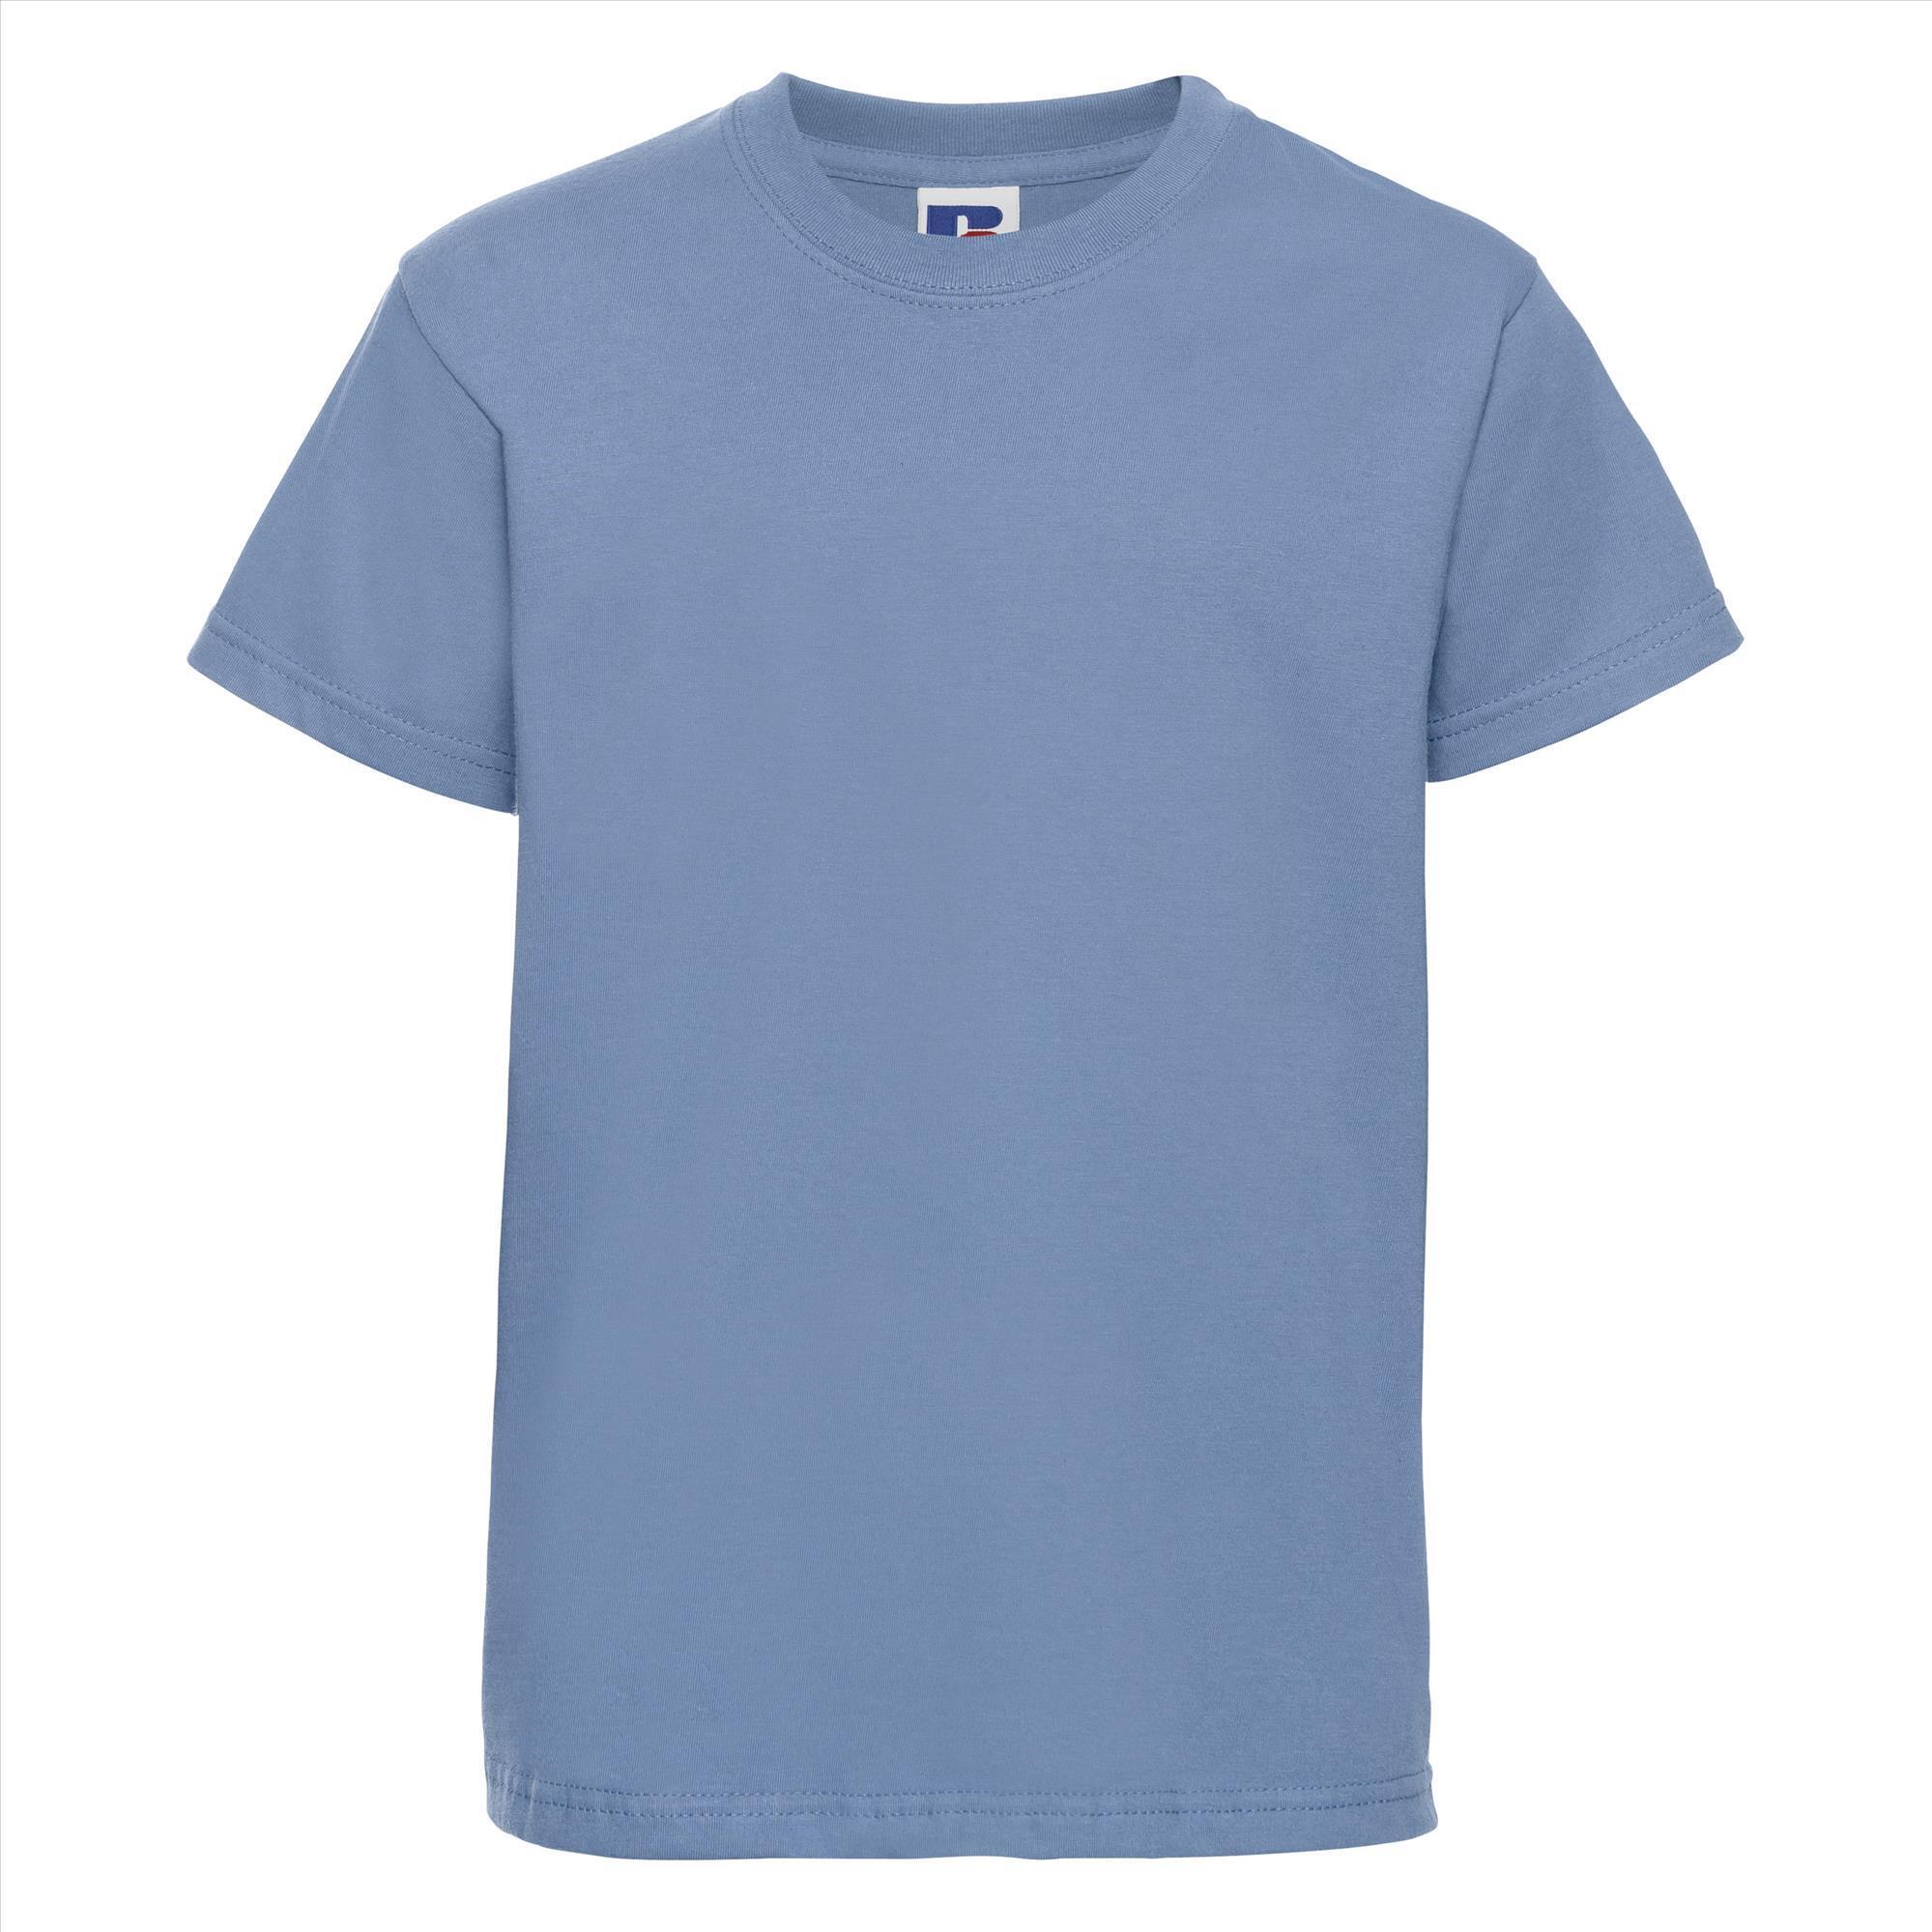 Kinder t-shirt sky blauw te personaliseren bedrukbaar